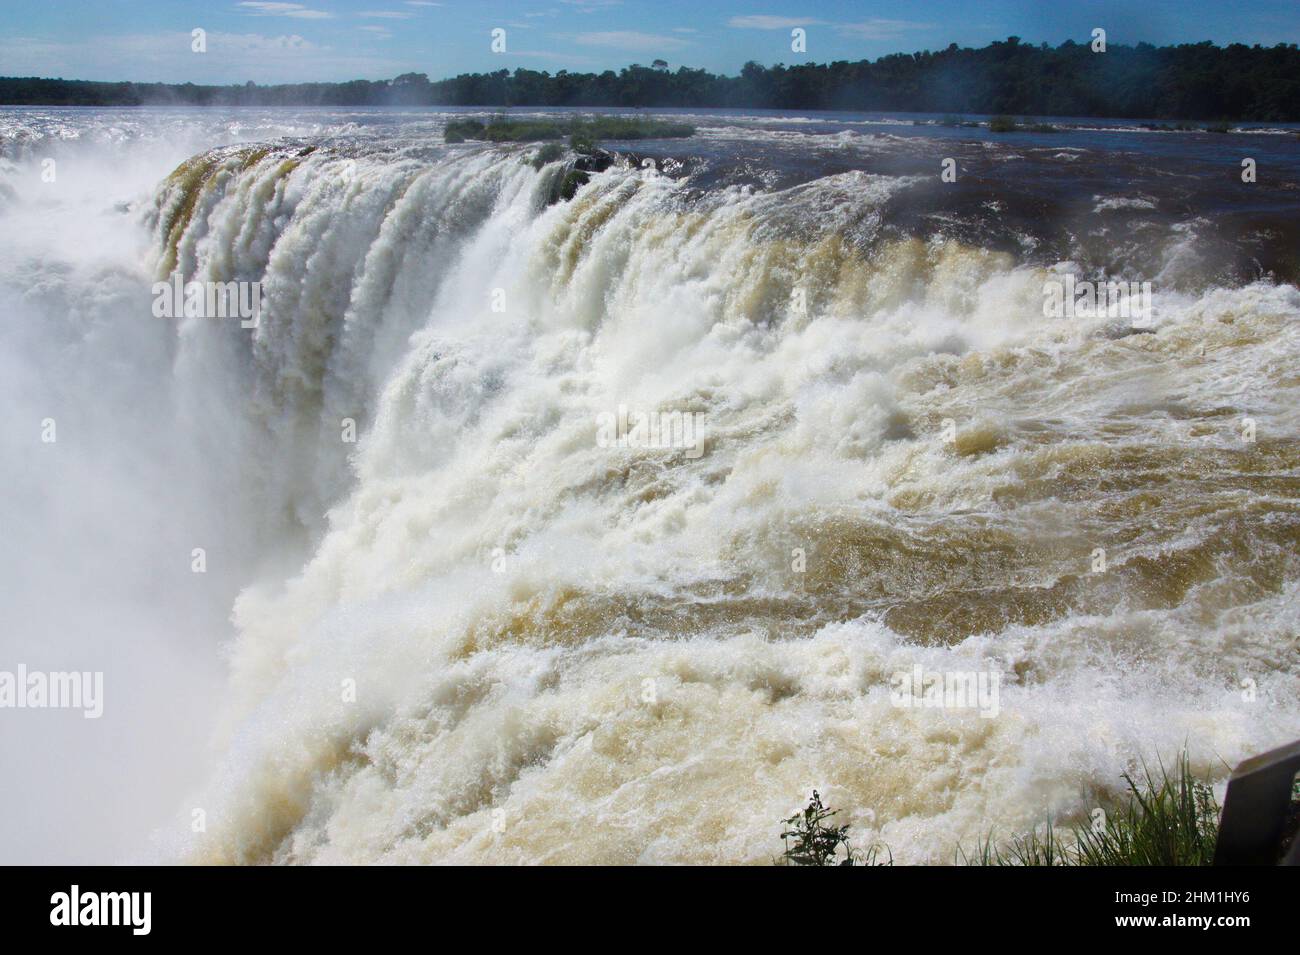 Merveille de la nature des chutes d'Iguazu, gorge du diable, frontière Argentine-Brésil Banque D'Images